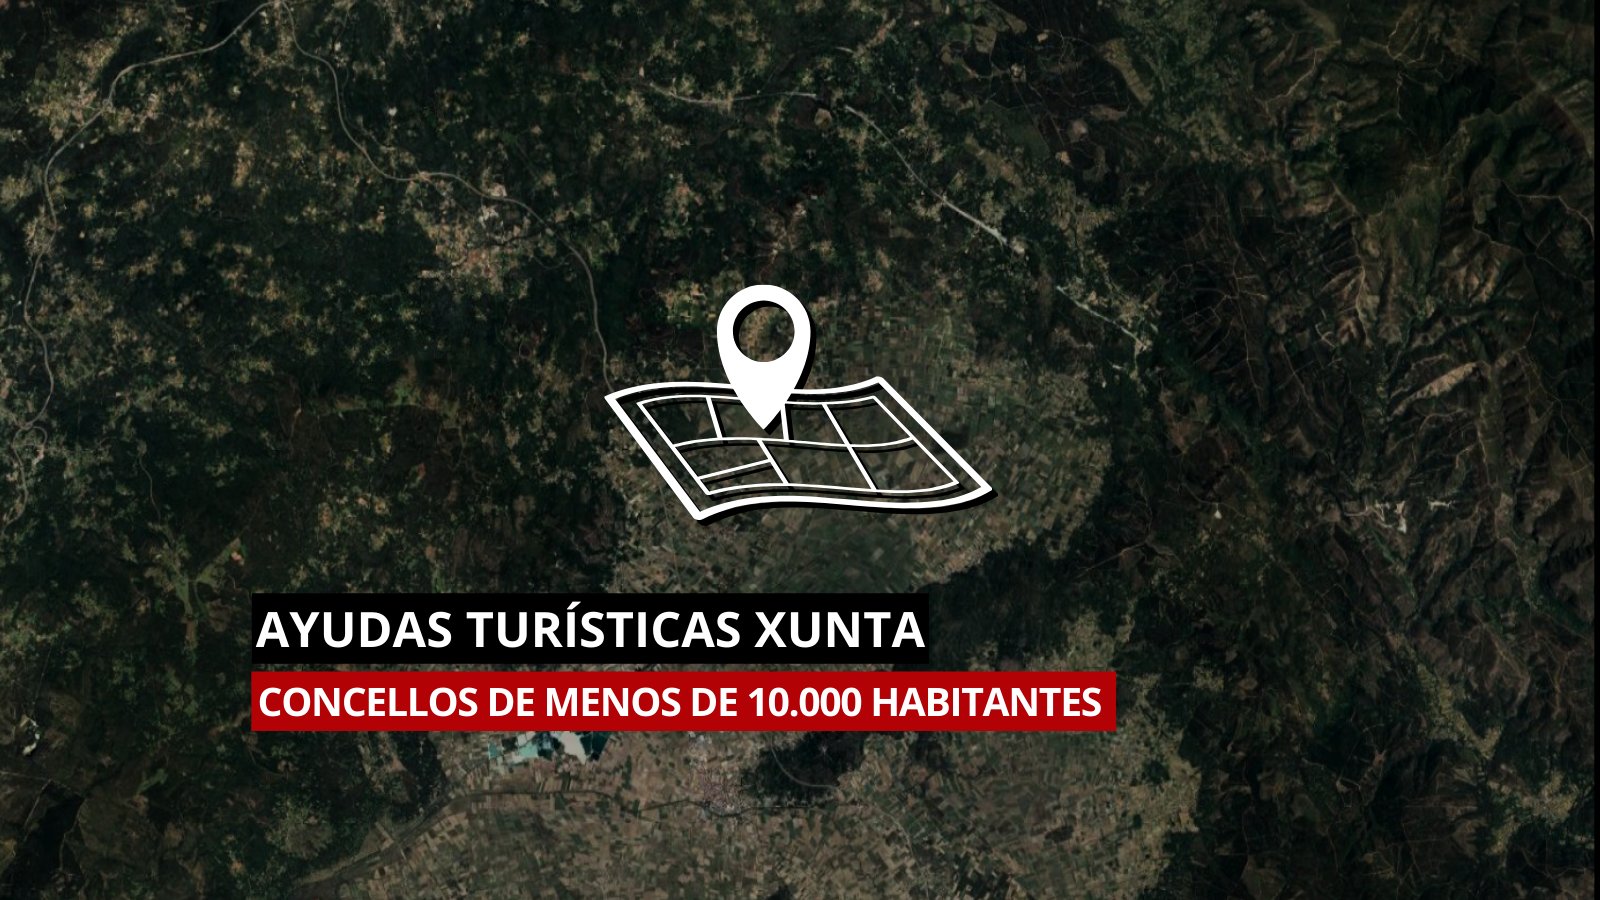 Ayudas turísticas de la Xunta para concellos: requisitos, plazos y cómo pedirlas